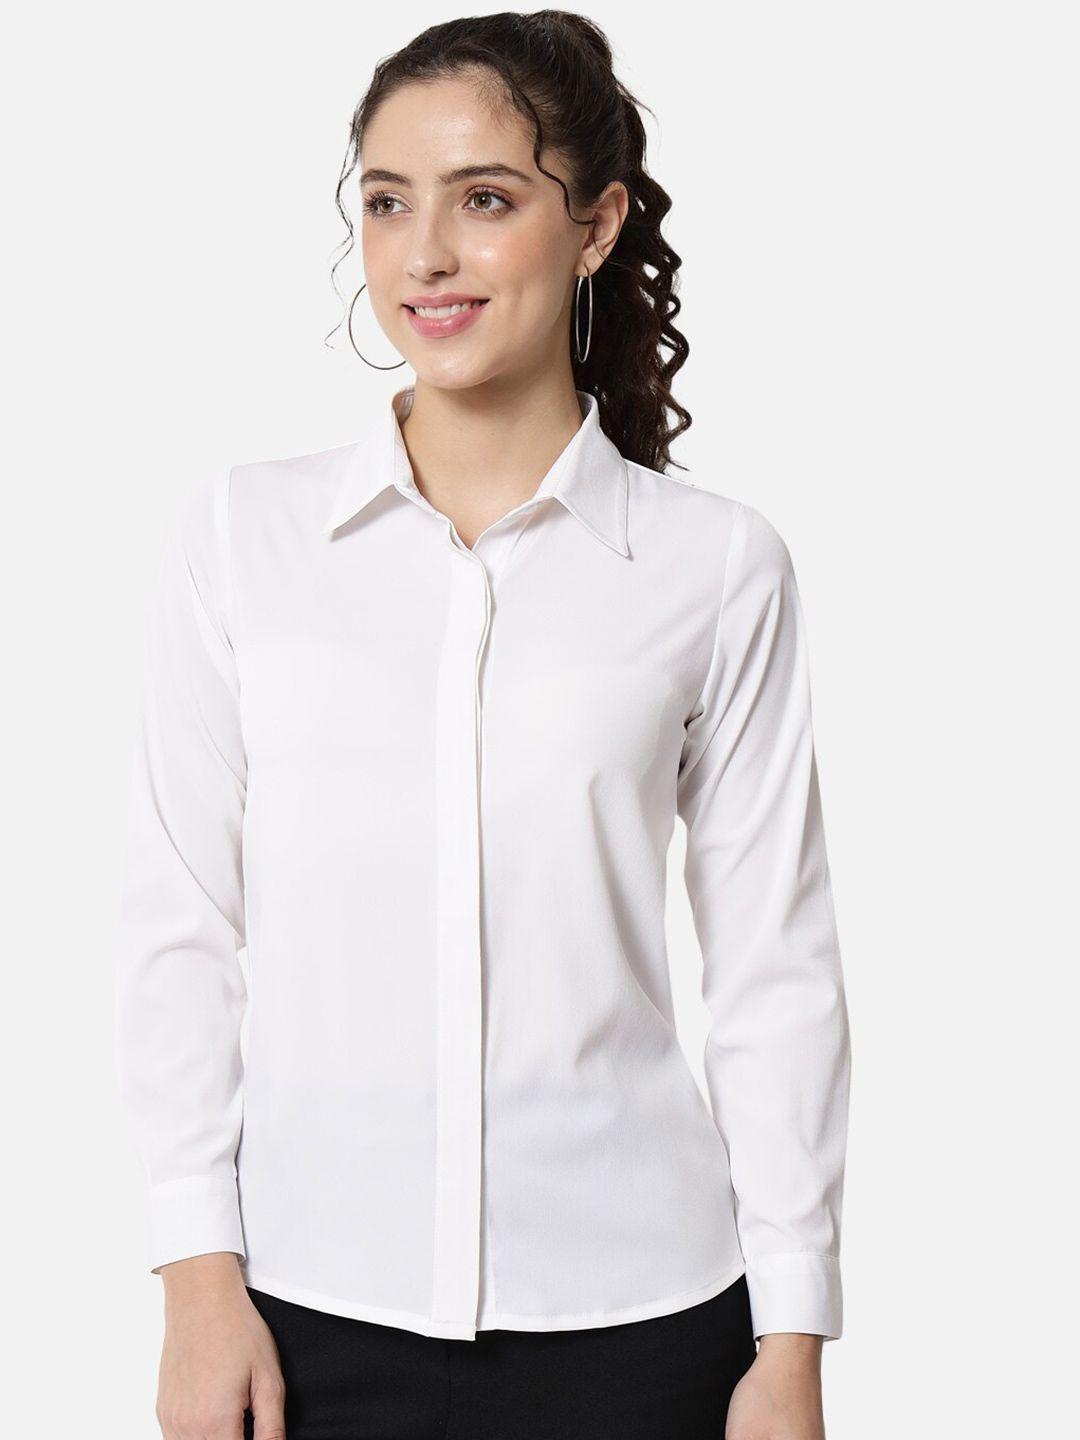 baesd standard opaque formal shirt